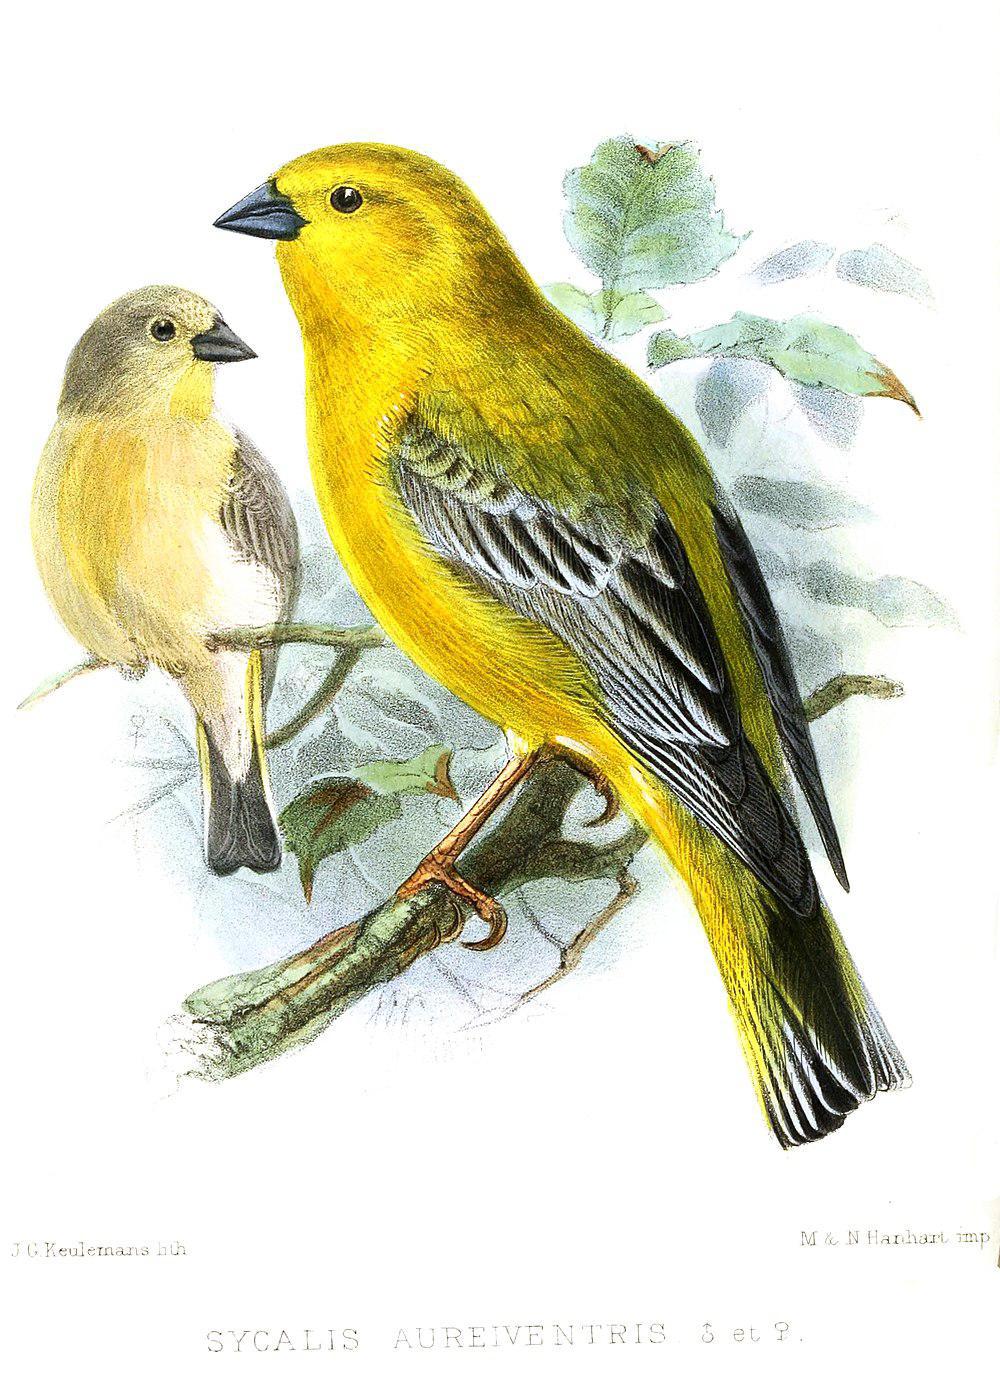 大黄雀鹀 / Greater Yellow Finch / Sicalis auriventris